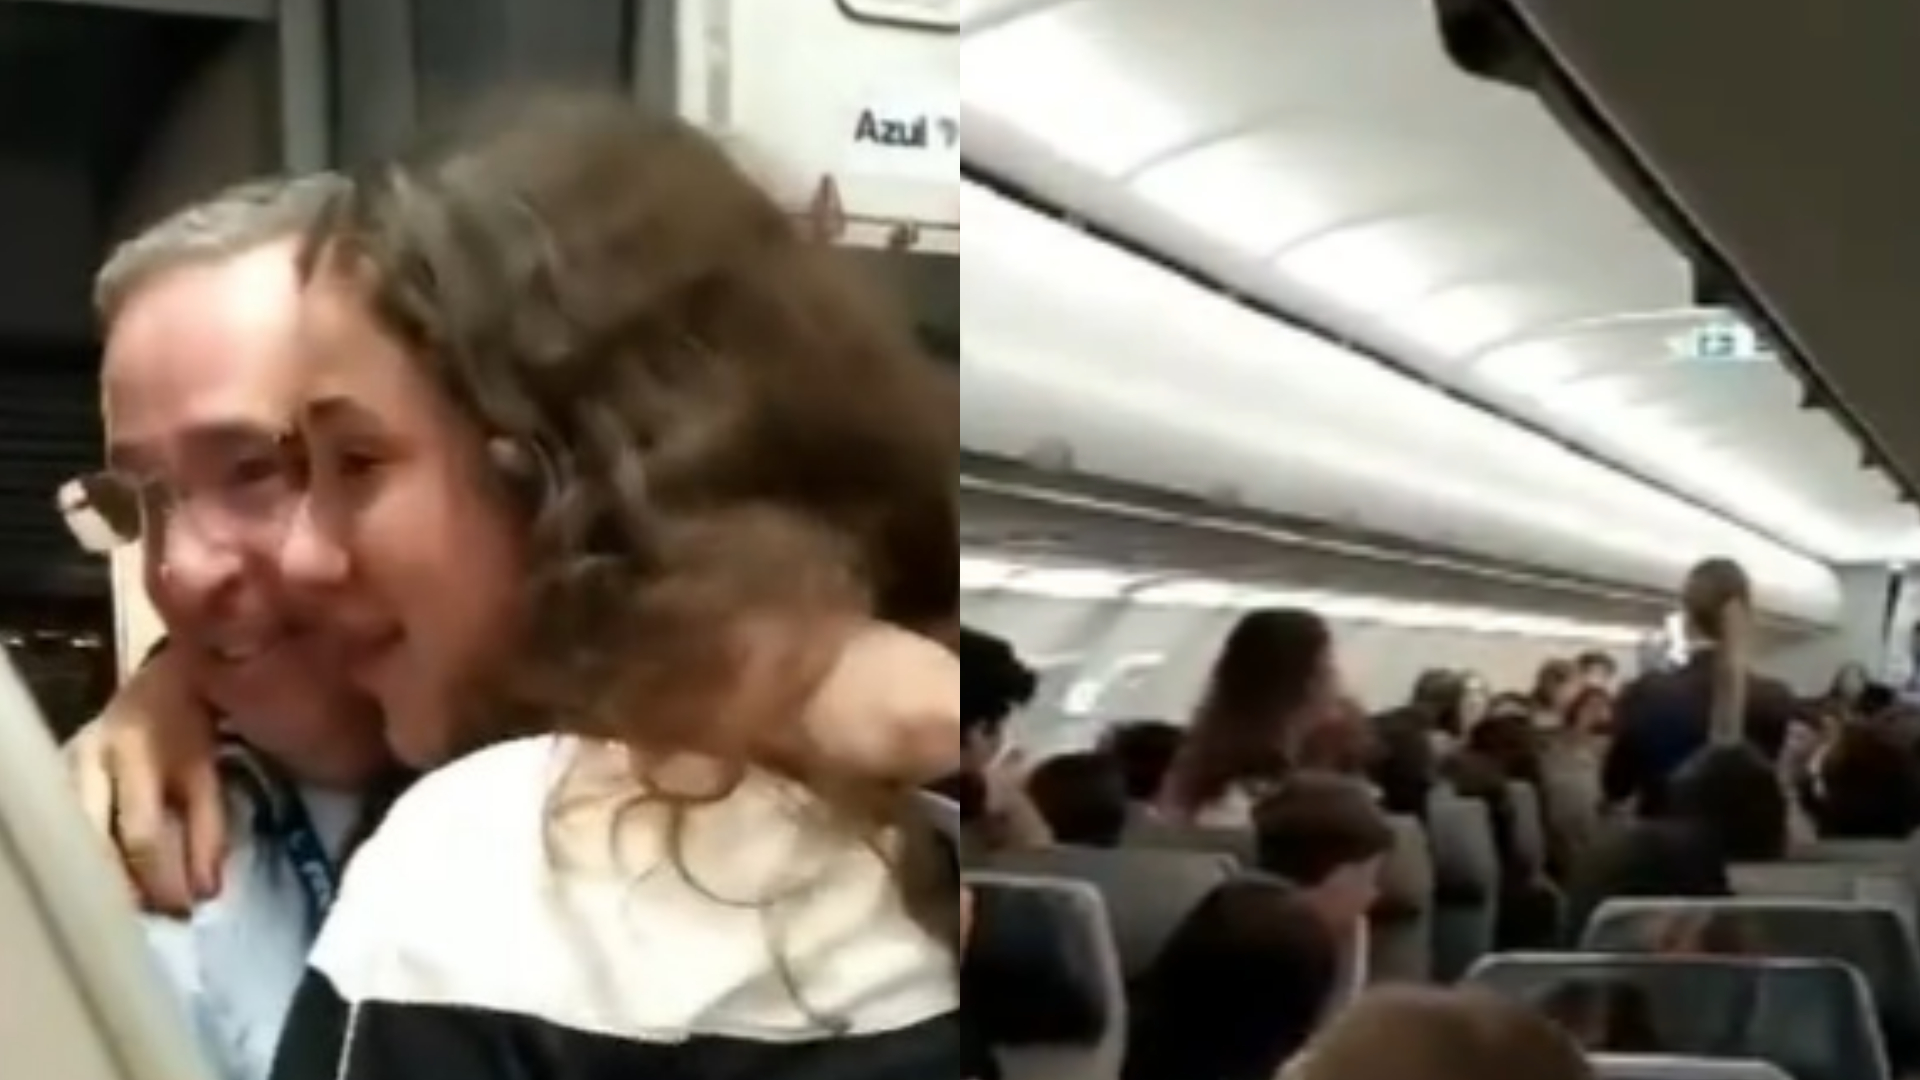 Piloto de avião surpreende filha em voo de viagem de formatura, e vídeo viraliza: “Emocionante”; assista